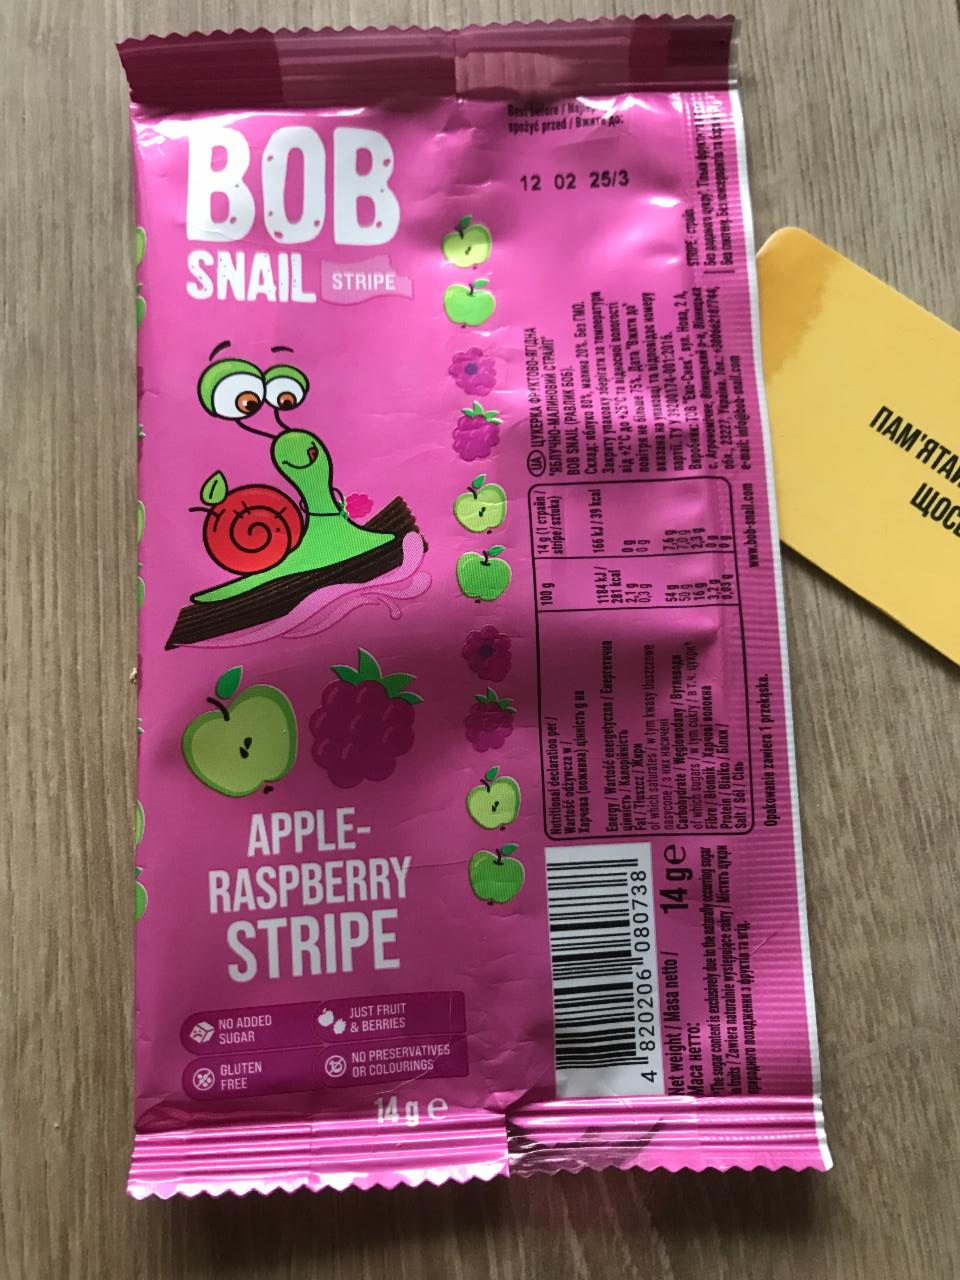 Фото - Конфеты натуральные фруктово-ягодные Яблоко-малина Улитка apple-raspberry stripe Боб Bob Snail